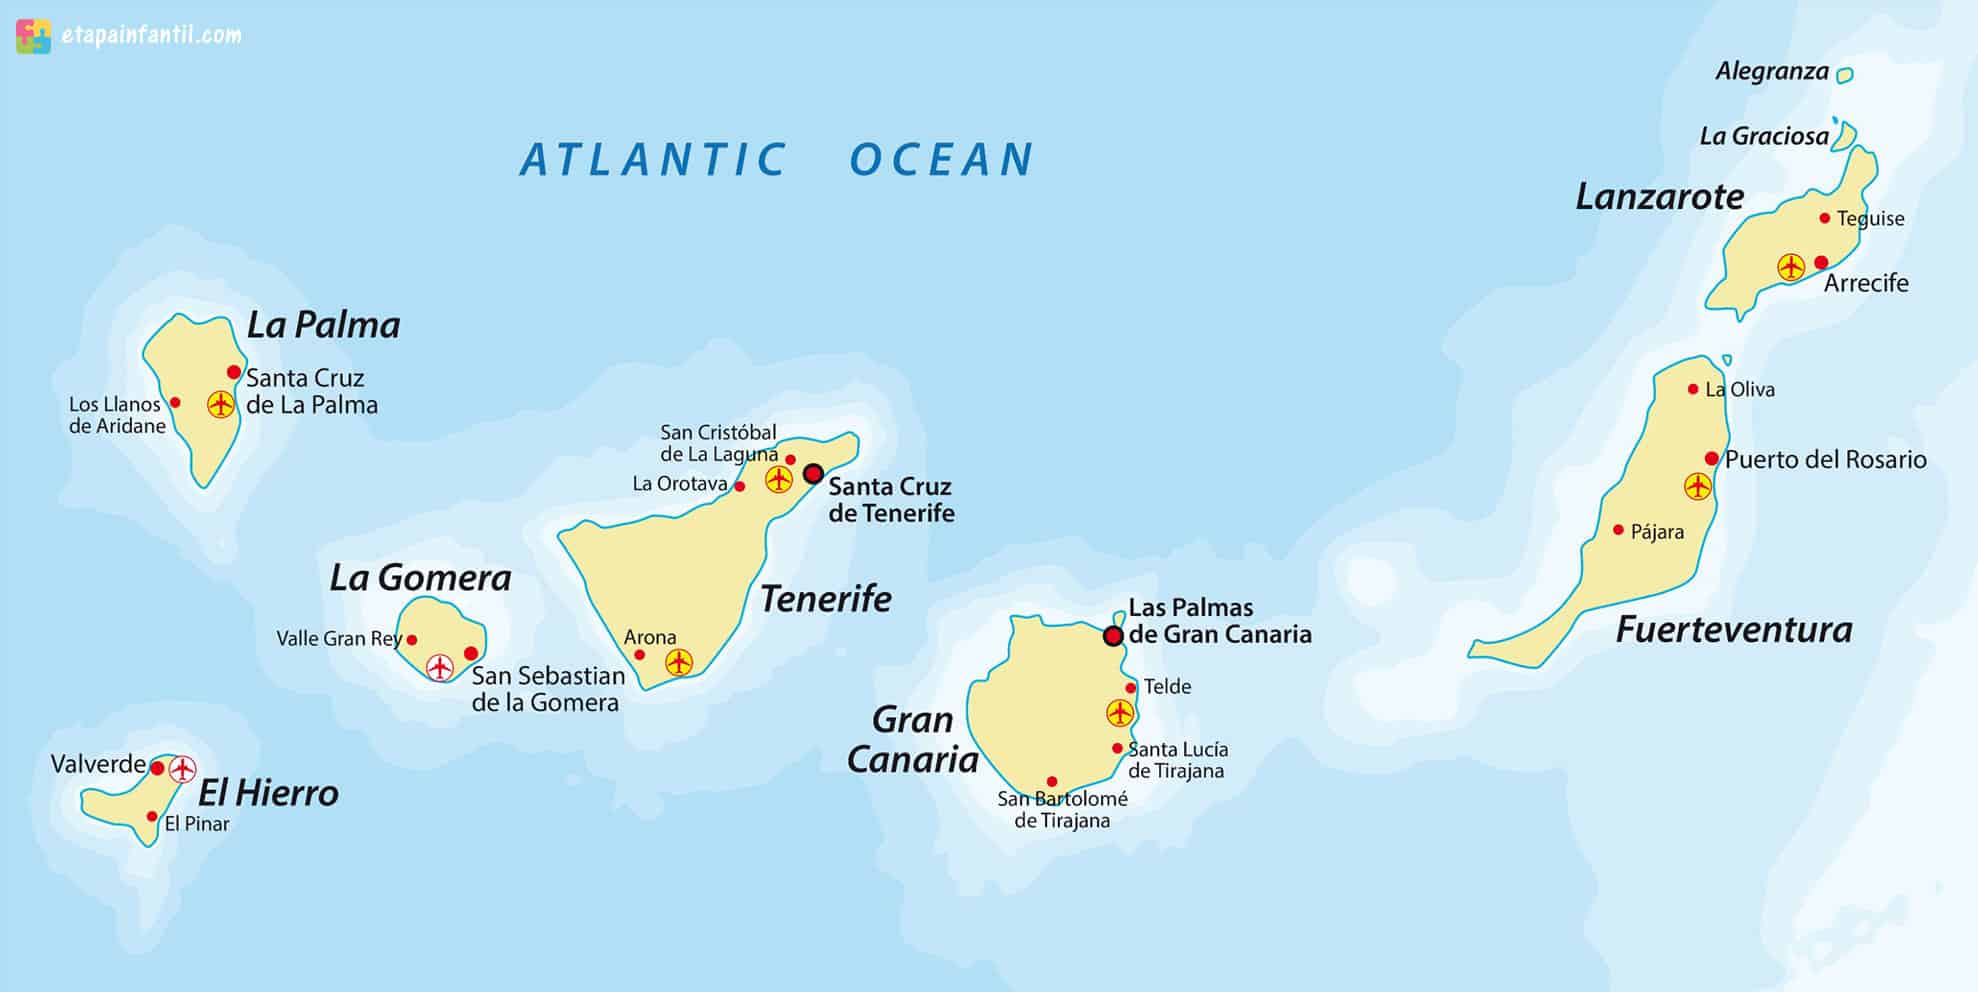 Mapa Las Islas Canarias 